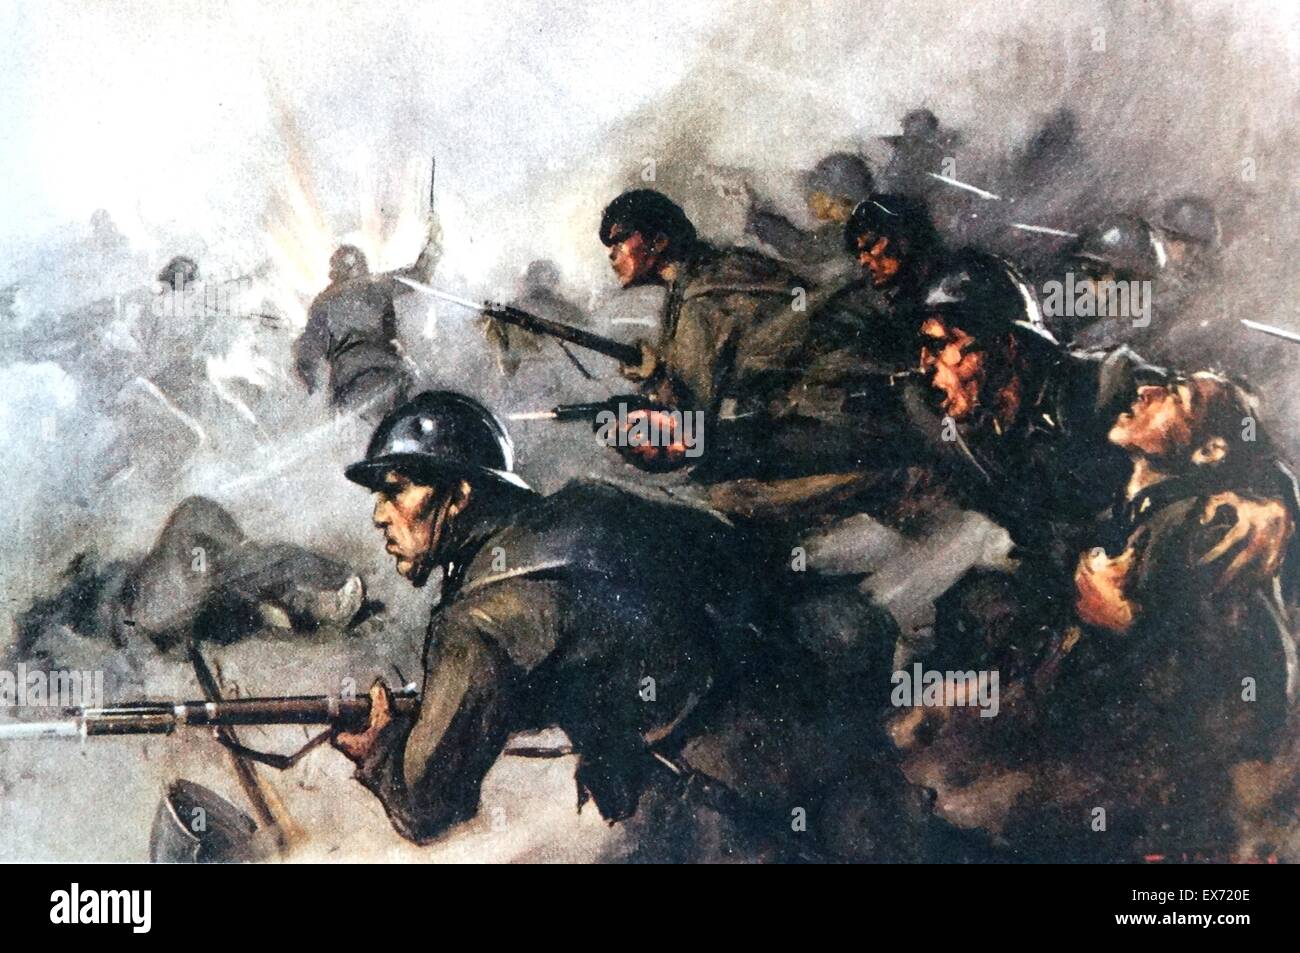 Des soldats italiens pour la lutte contre les nationalistes en Espagne, pendant la guerre civile espagnole Banque D'Images